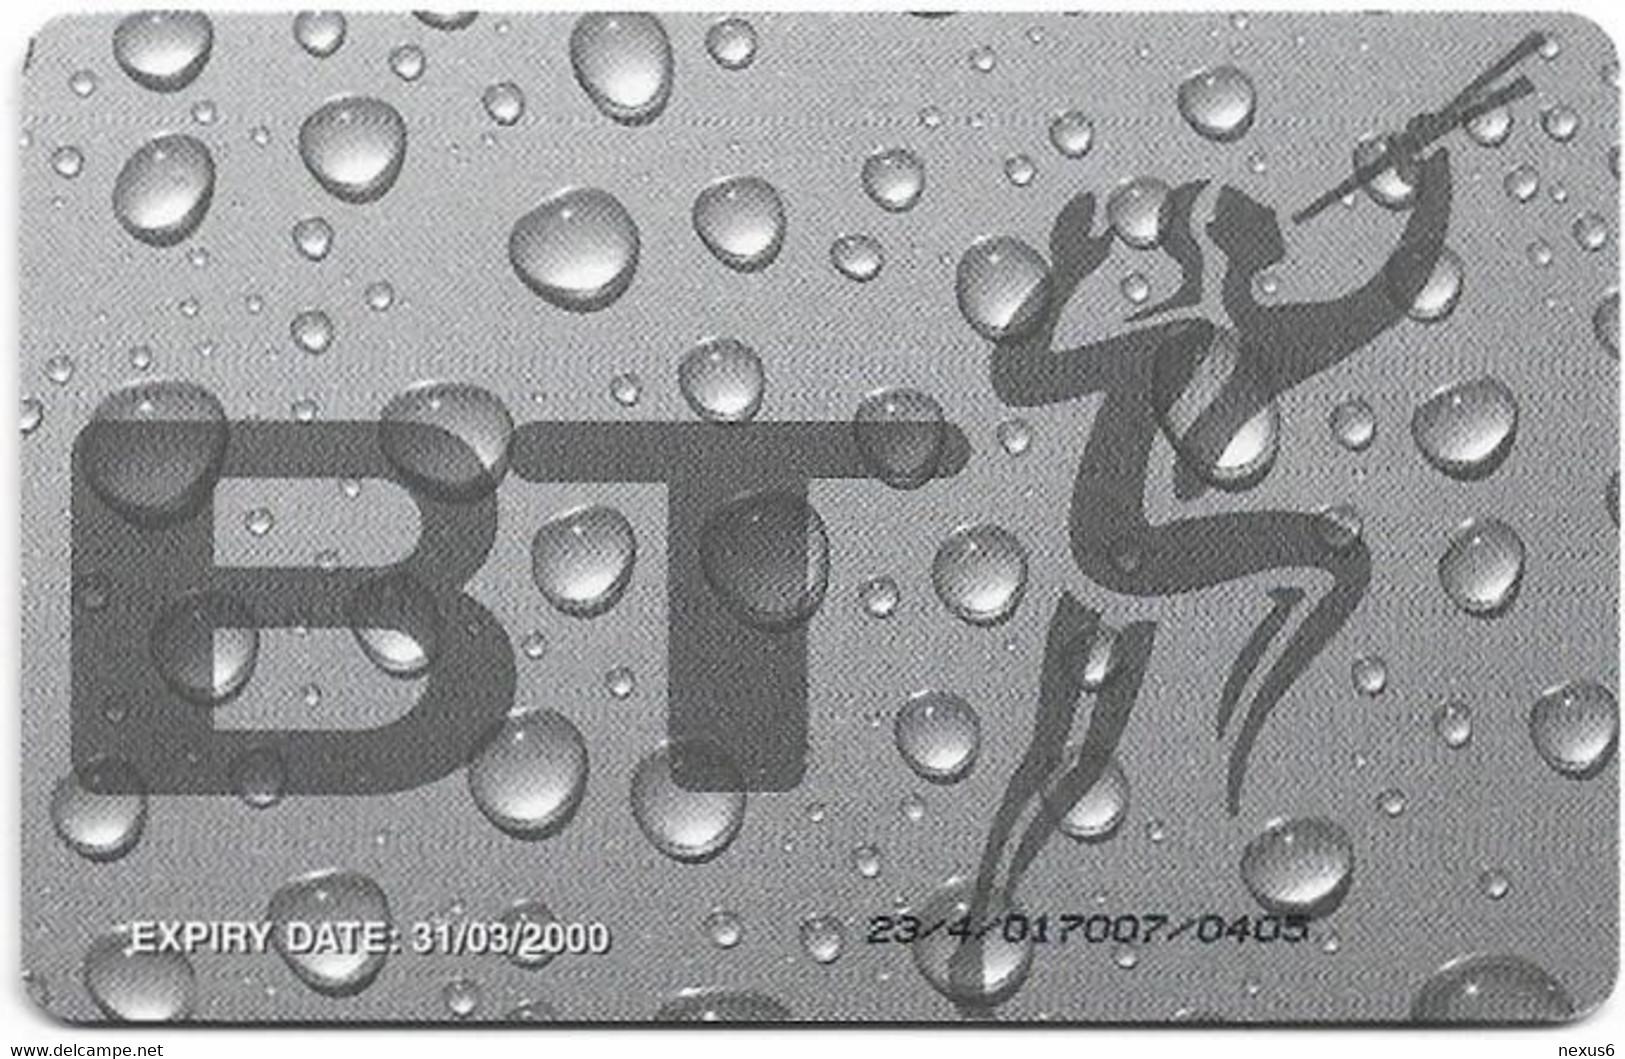 UK - BT (Chip) - PRO336 - BCP-087 - Current Contents Connect, 2£, 2.700ex, Mint - BT Promotional